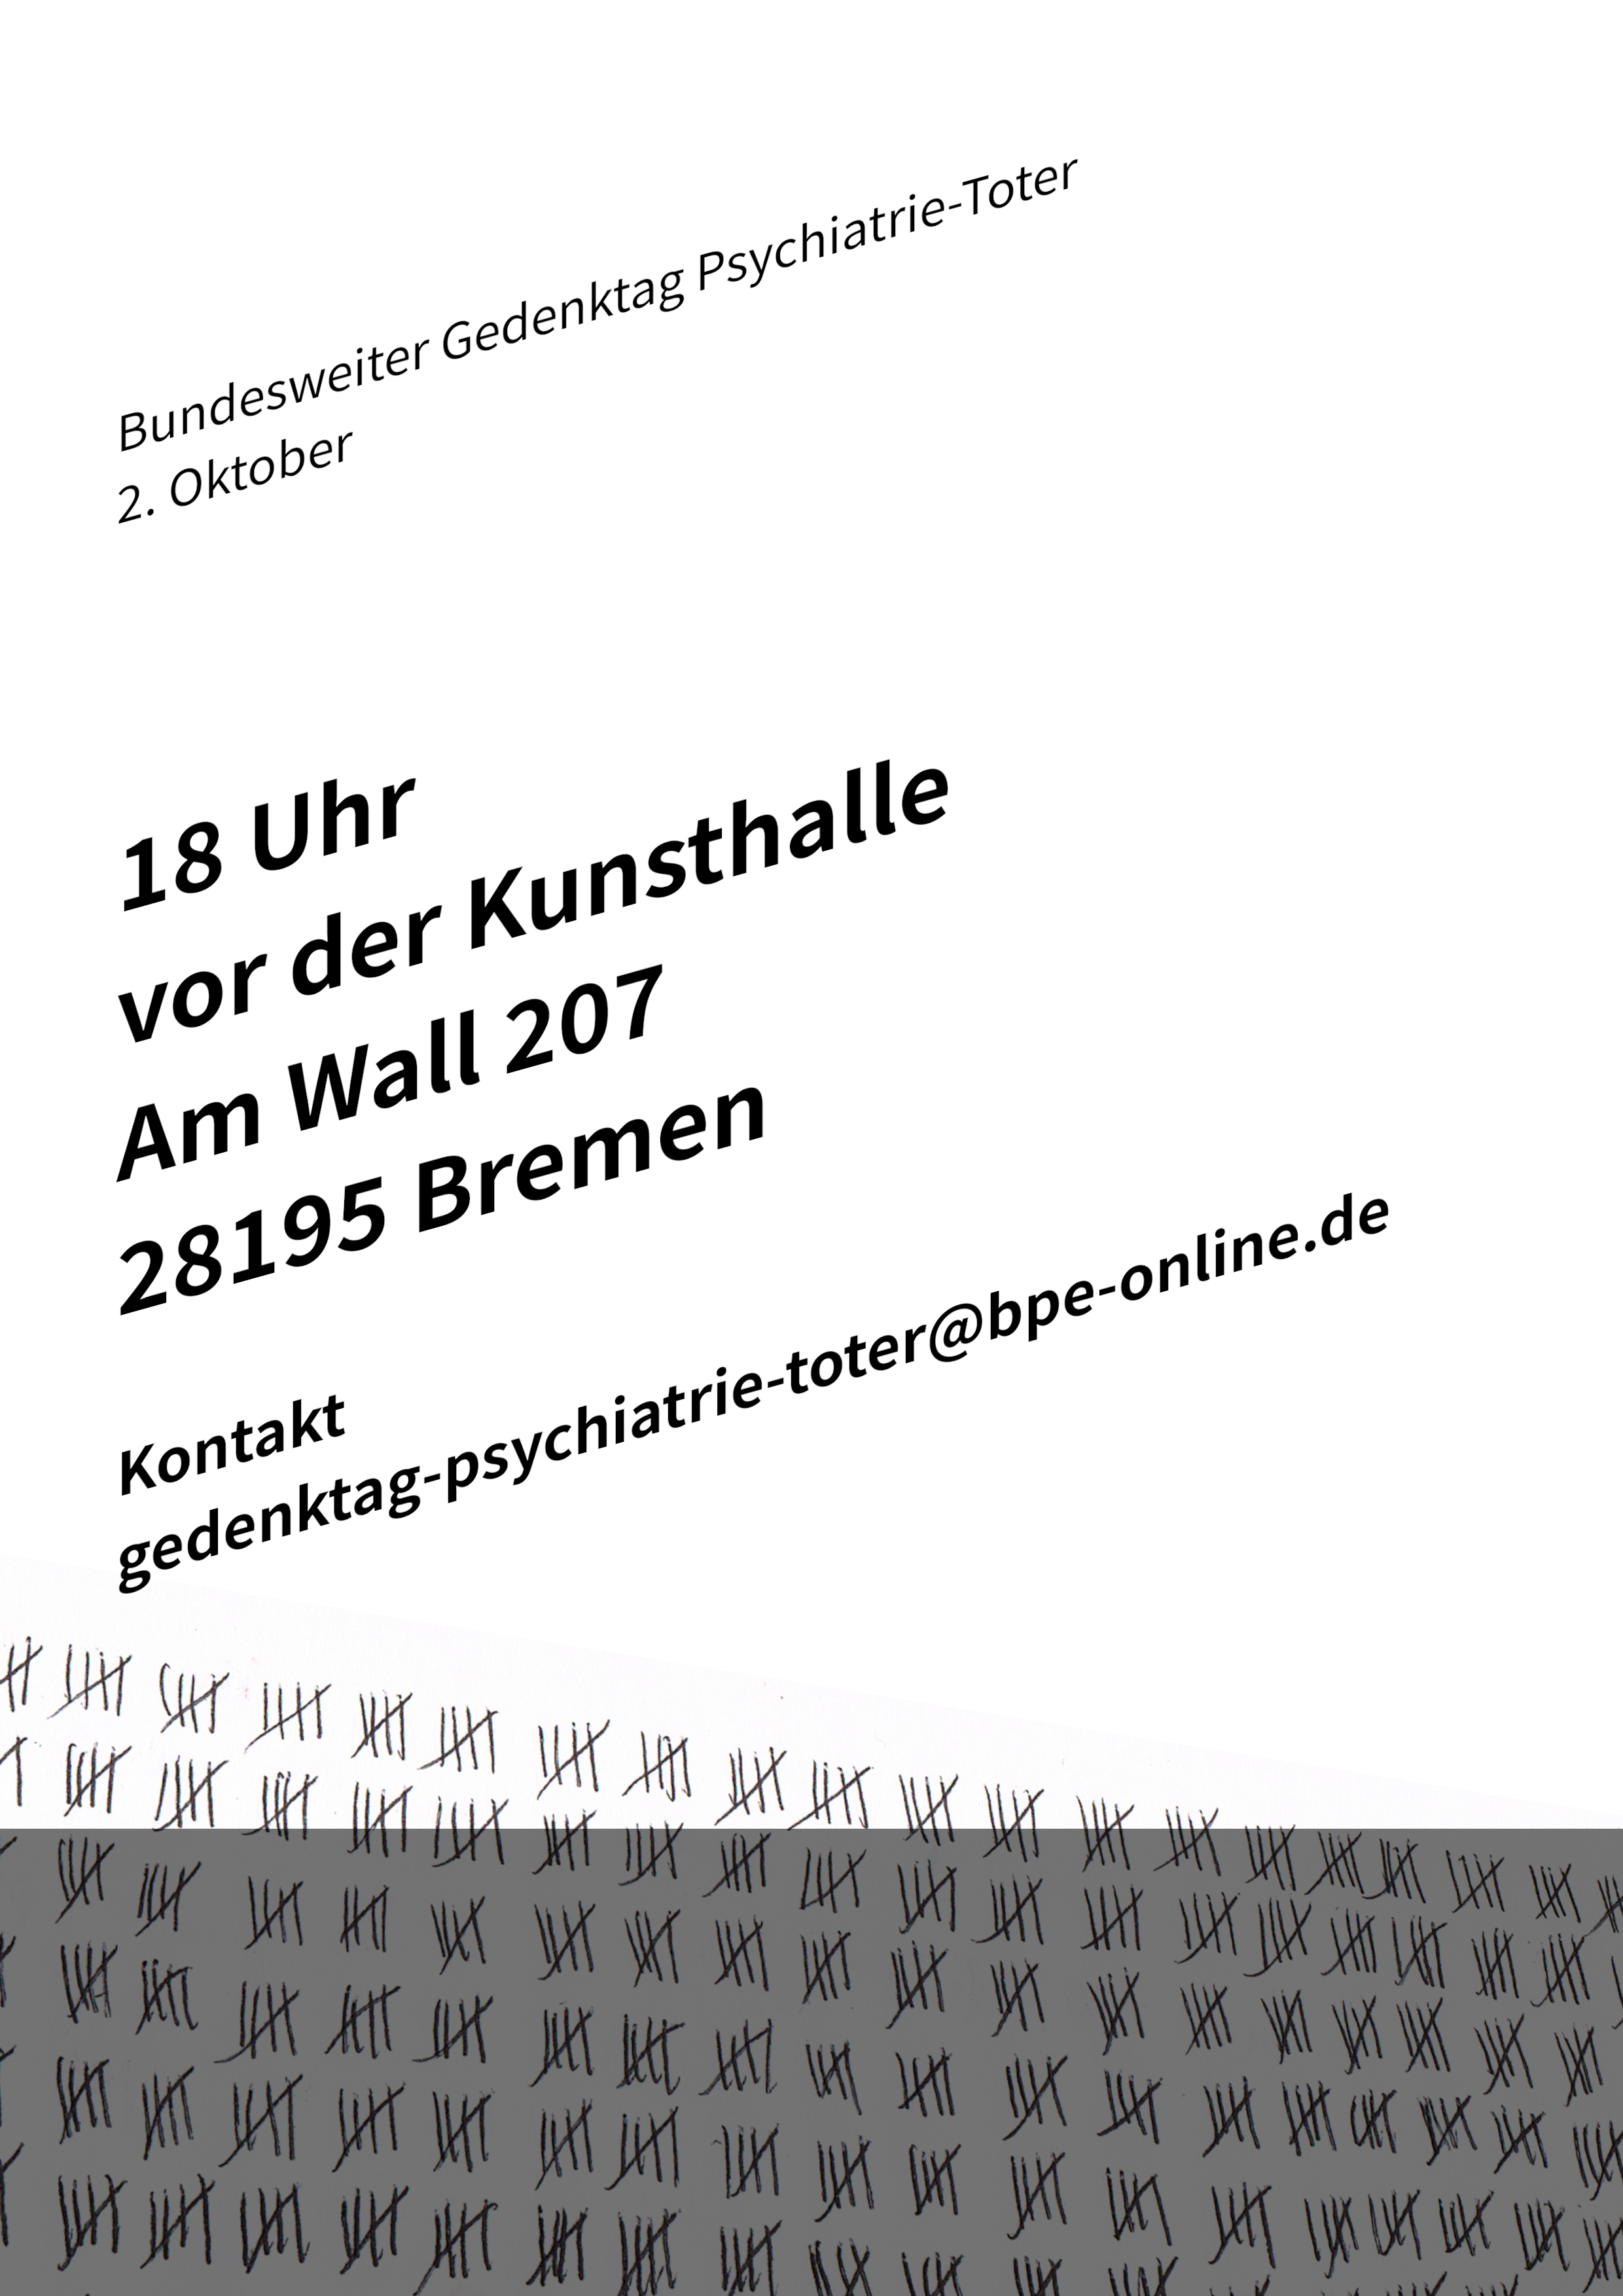 You are currently viewing Aufruf zur Kundgebung in Bremen zum Gedenktag der Psychiatrie-Toten